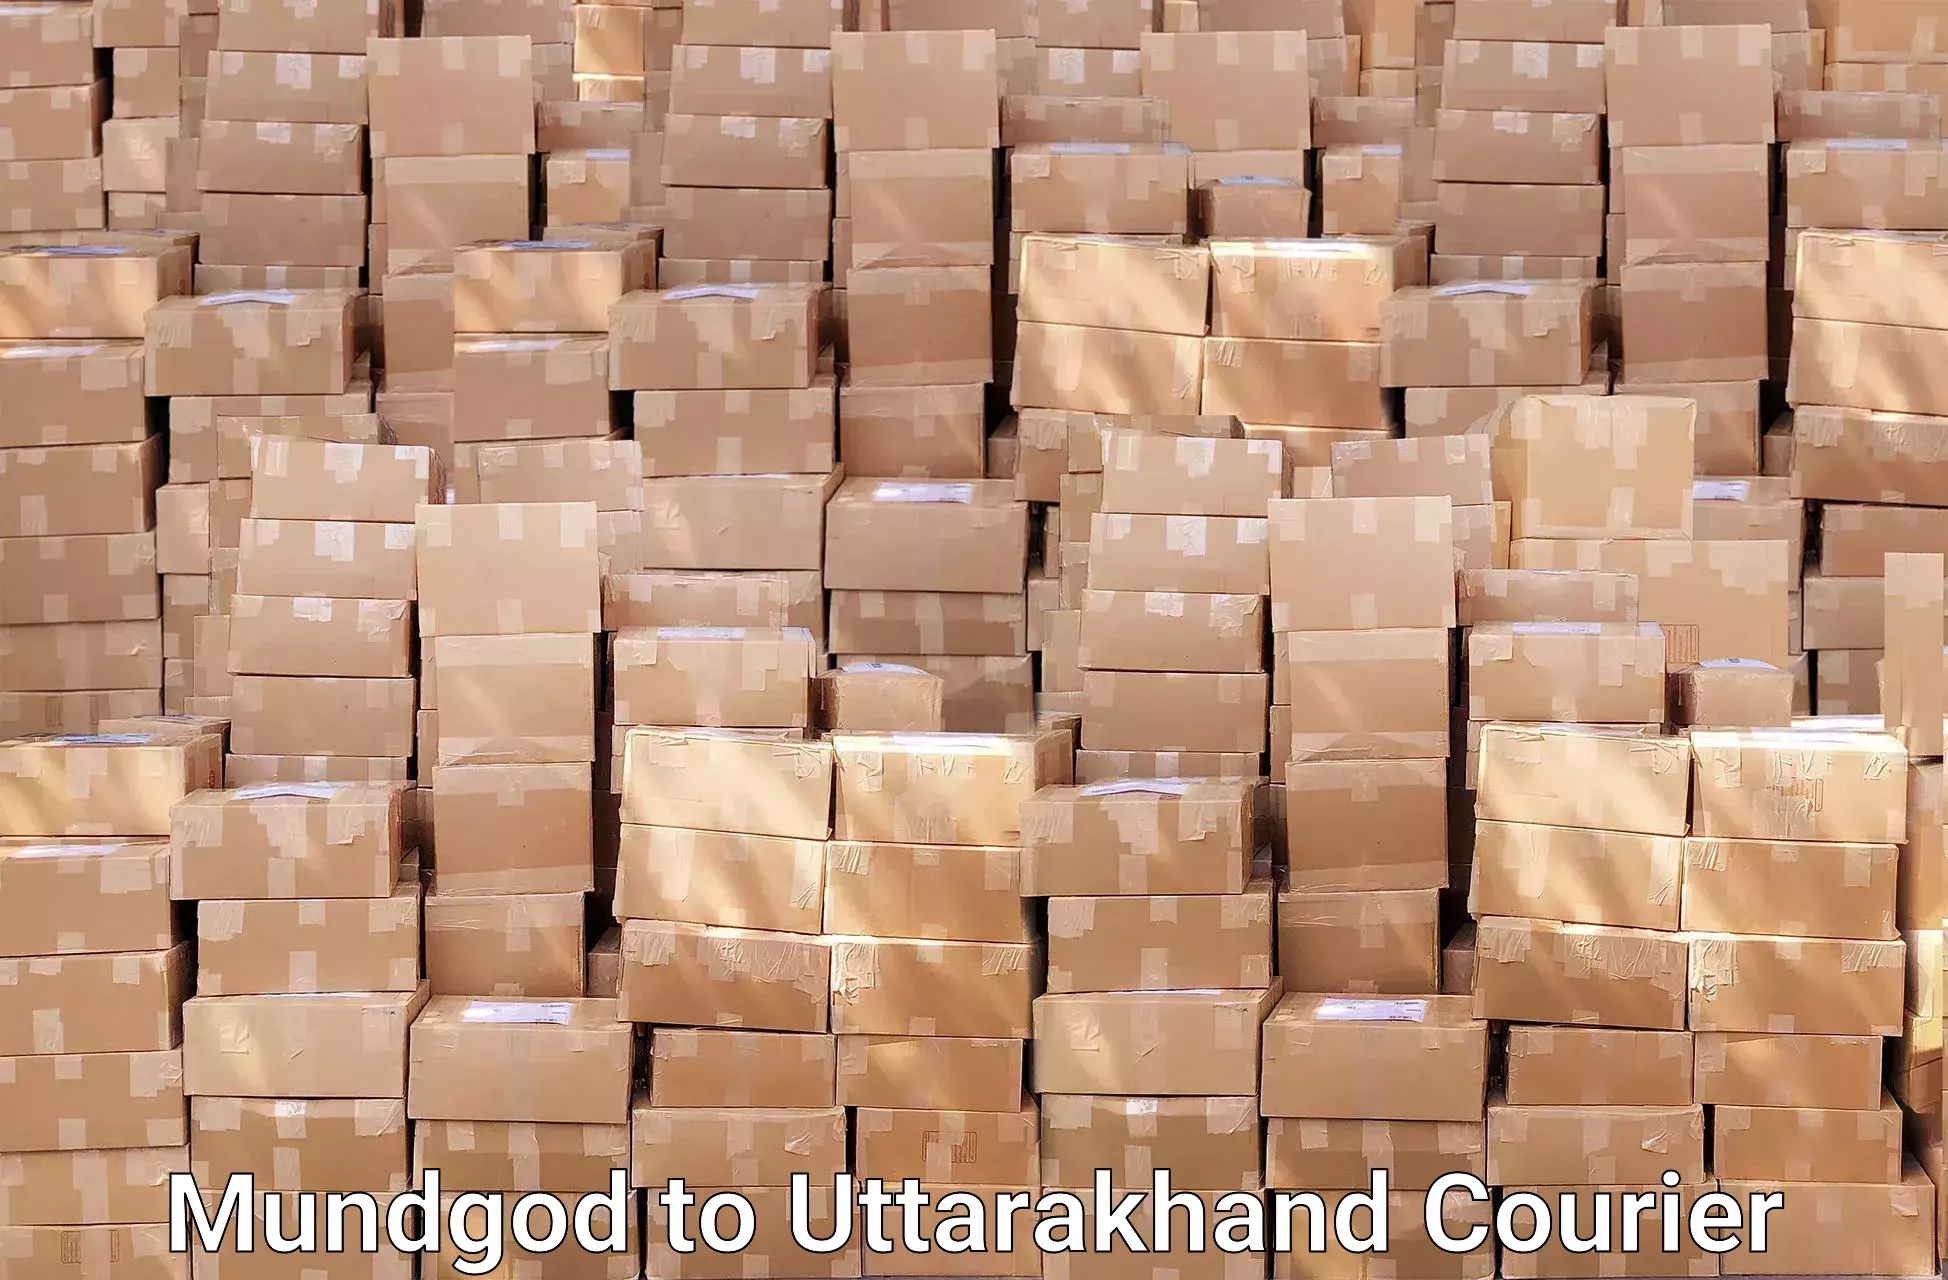 Moving and storage services Mundgod to Uttarkashi